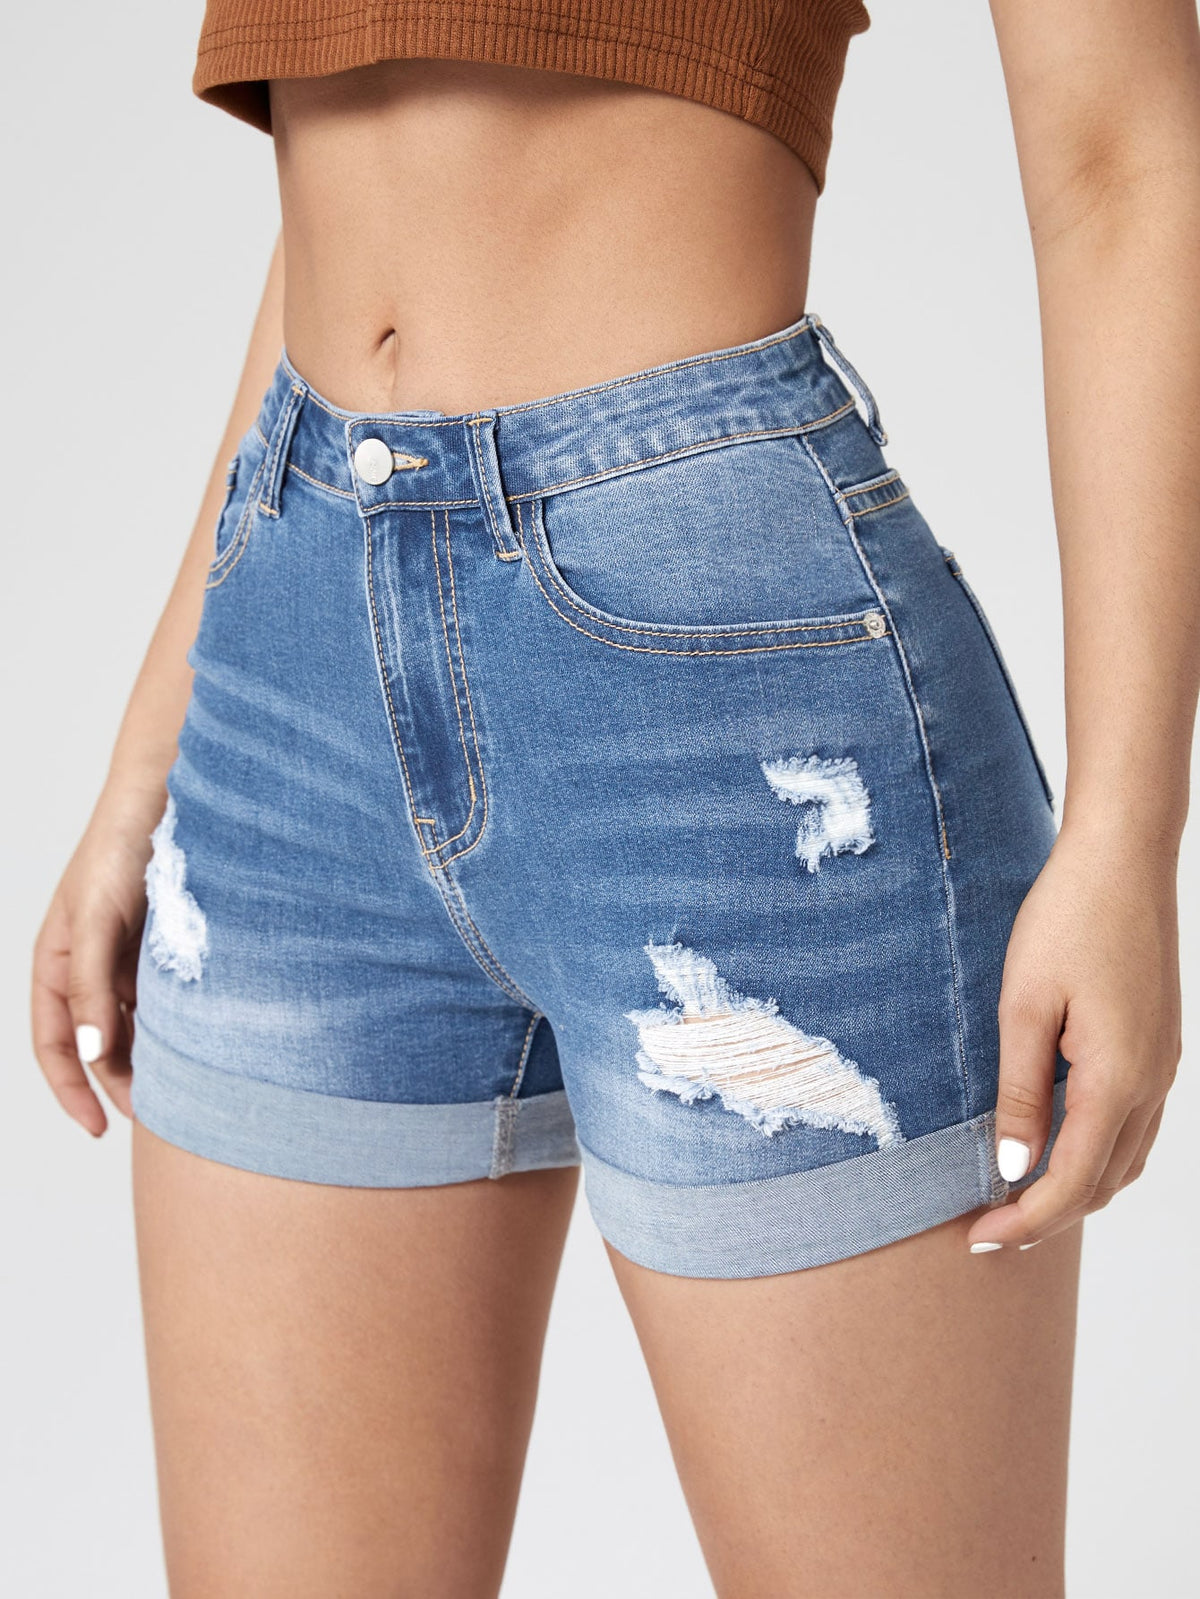 Cut Off Womens Denim Shorts Low Rise Bikini S-XXL Booty Ripped Raw Hem Jeans